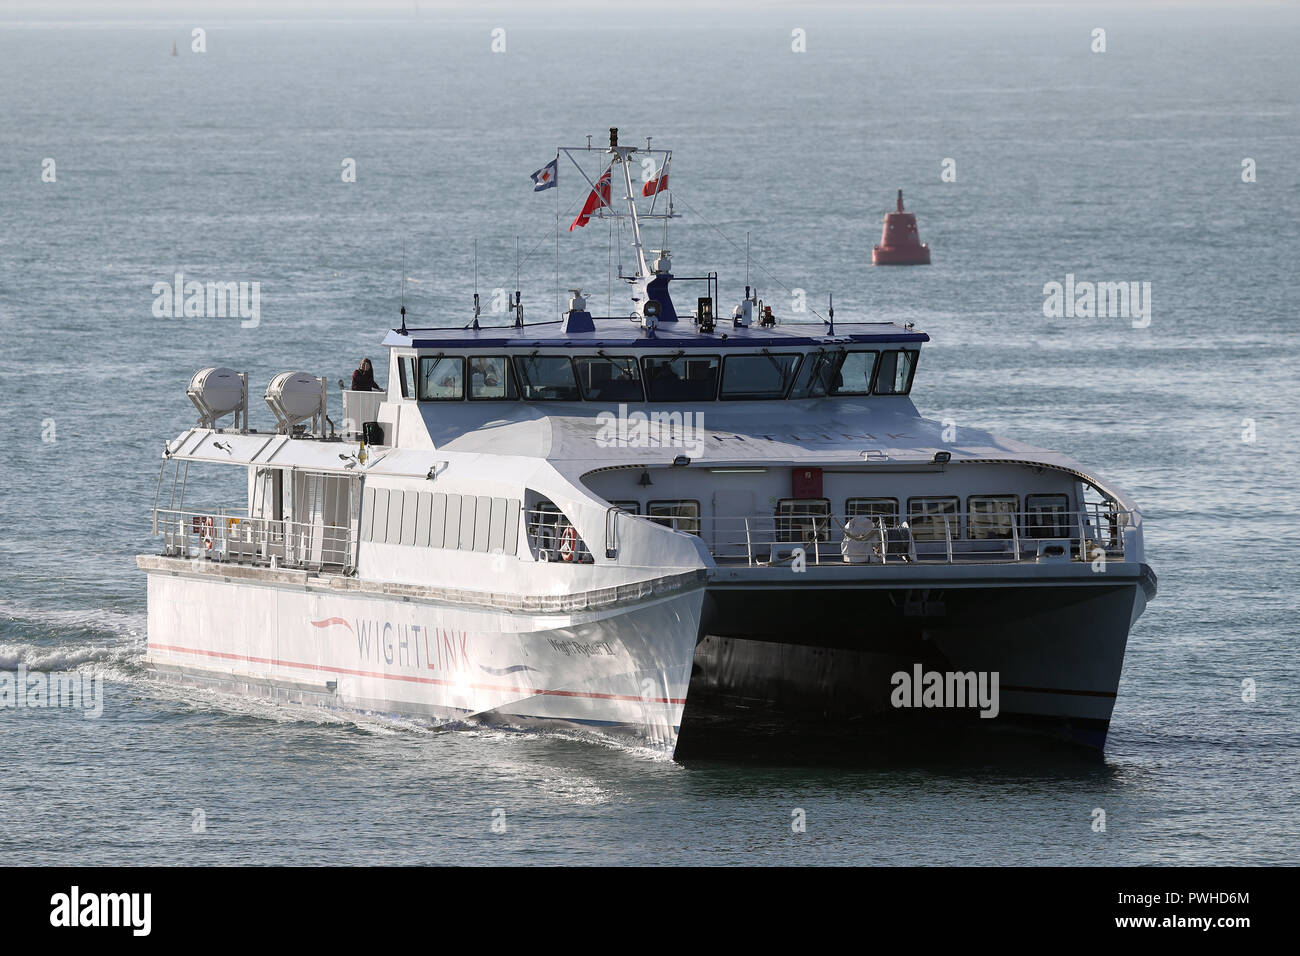 Il Wightlink passeggeri ad alta velocità HSC catamarano Wight Ryder II, arriva nel porto di Portsmouth. Foto Stock